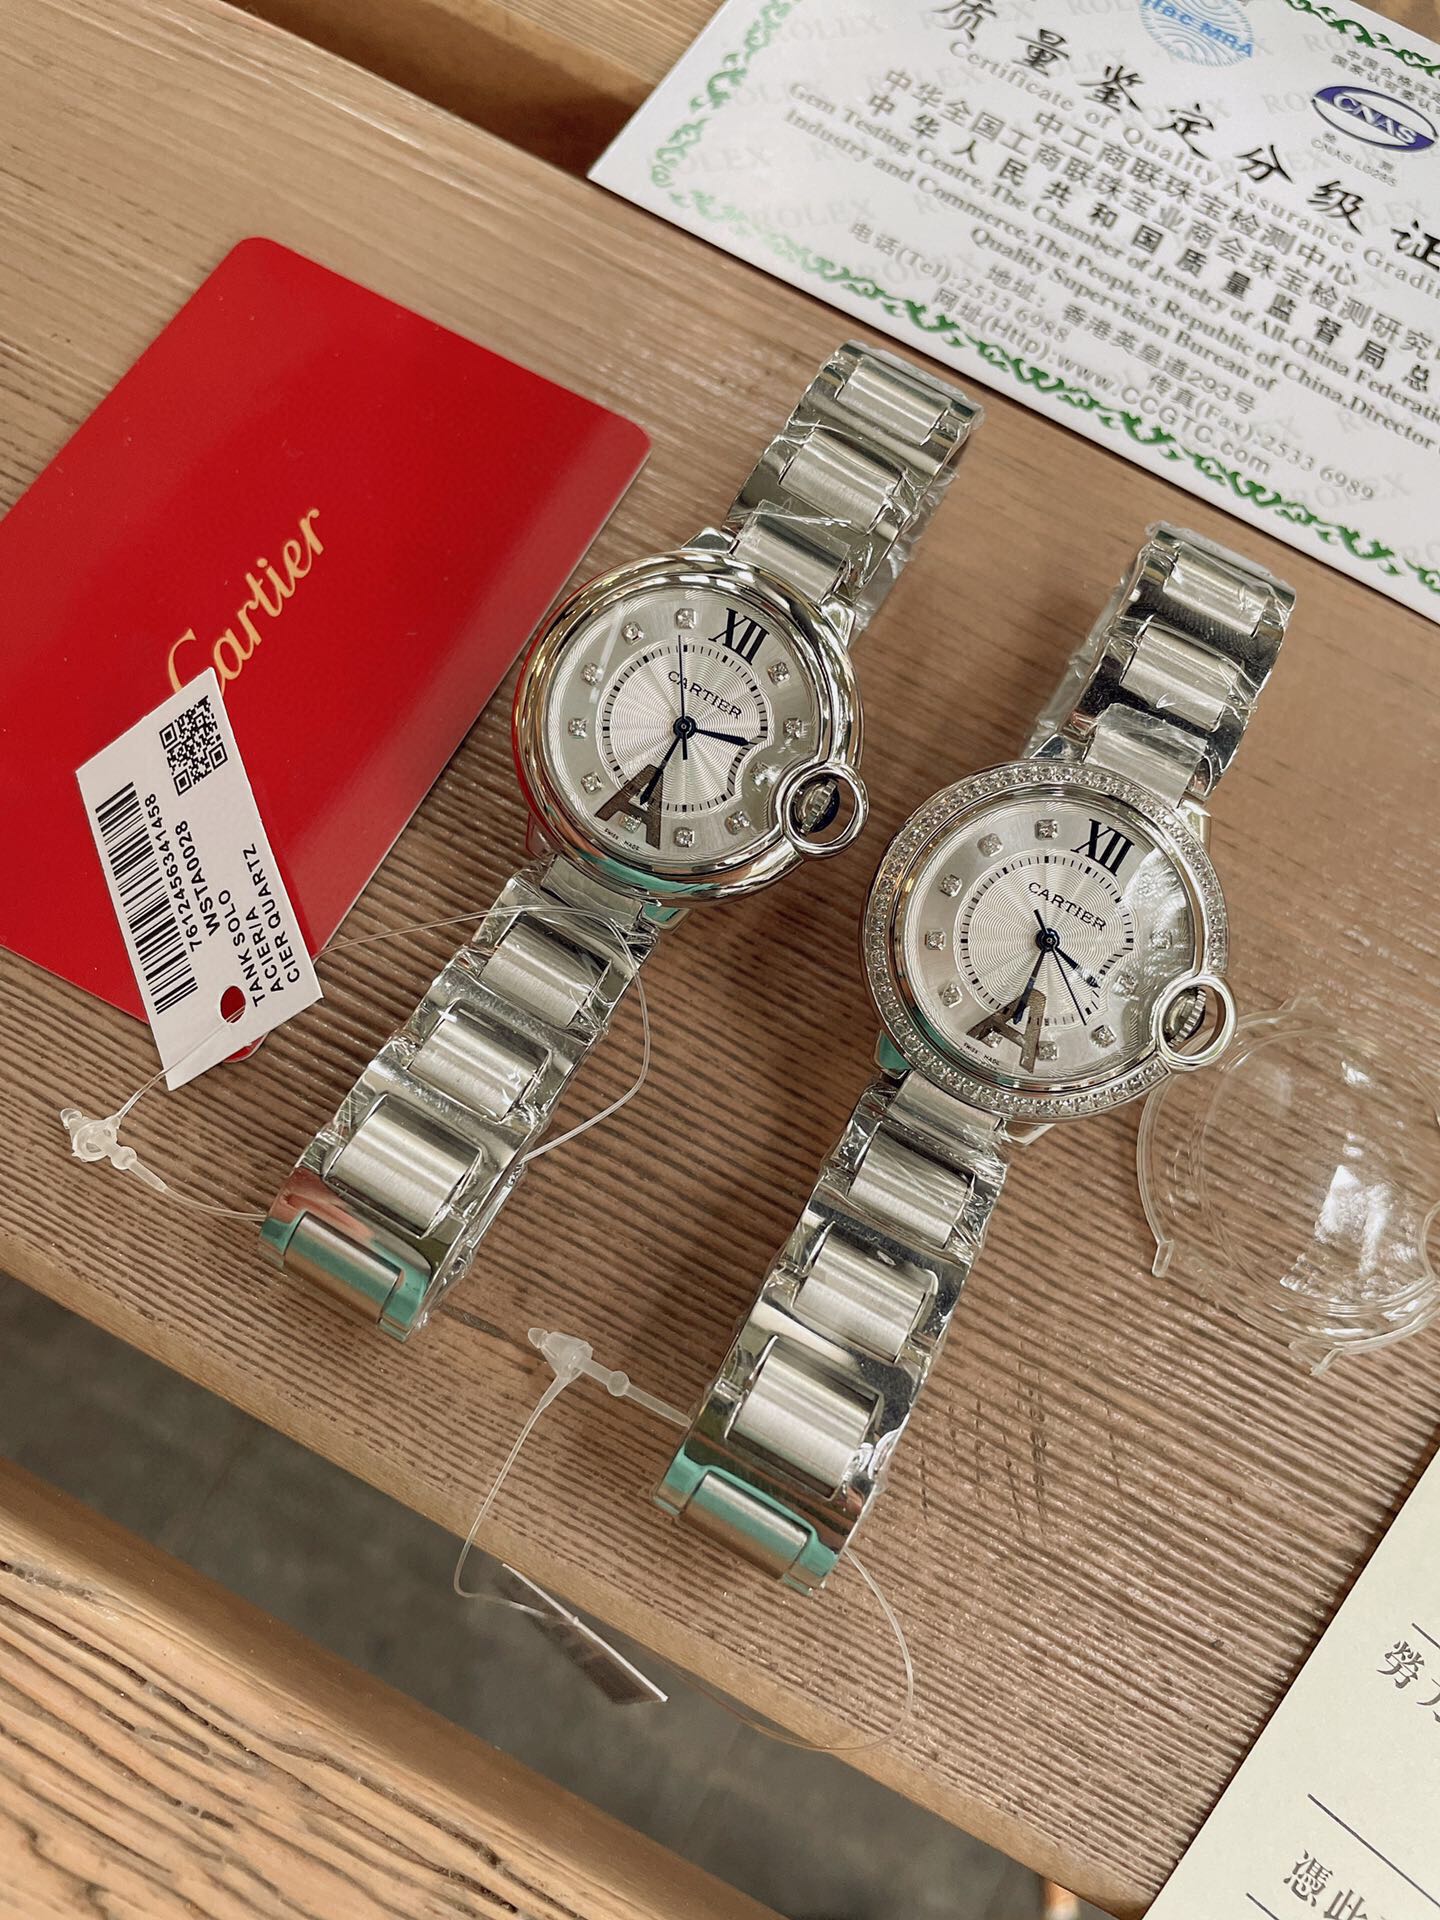 「ダイヤモンドなし」CARTIERカルティエ 時計 中身コピー フランス 薄い腕時計 軽量 レディース 最新商品 _2